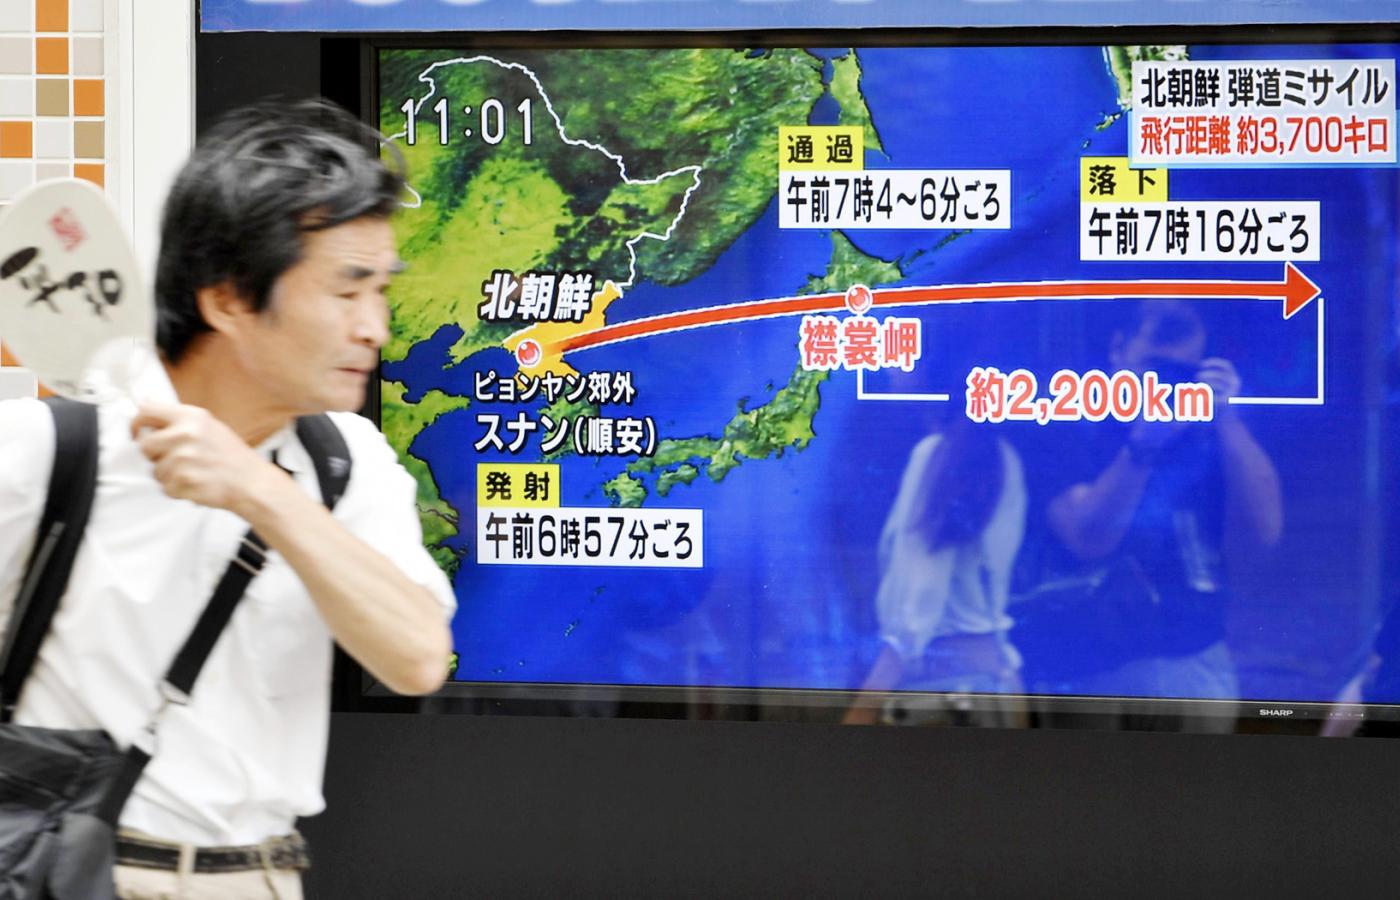 Przechodzień w Tokio na tle ekranu, na którym pokazano atak ze strony Korei Północnej.